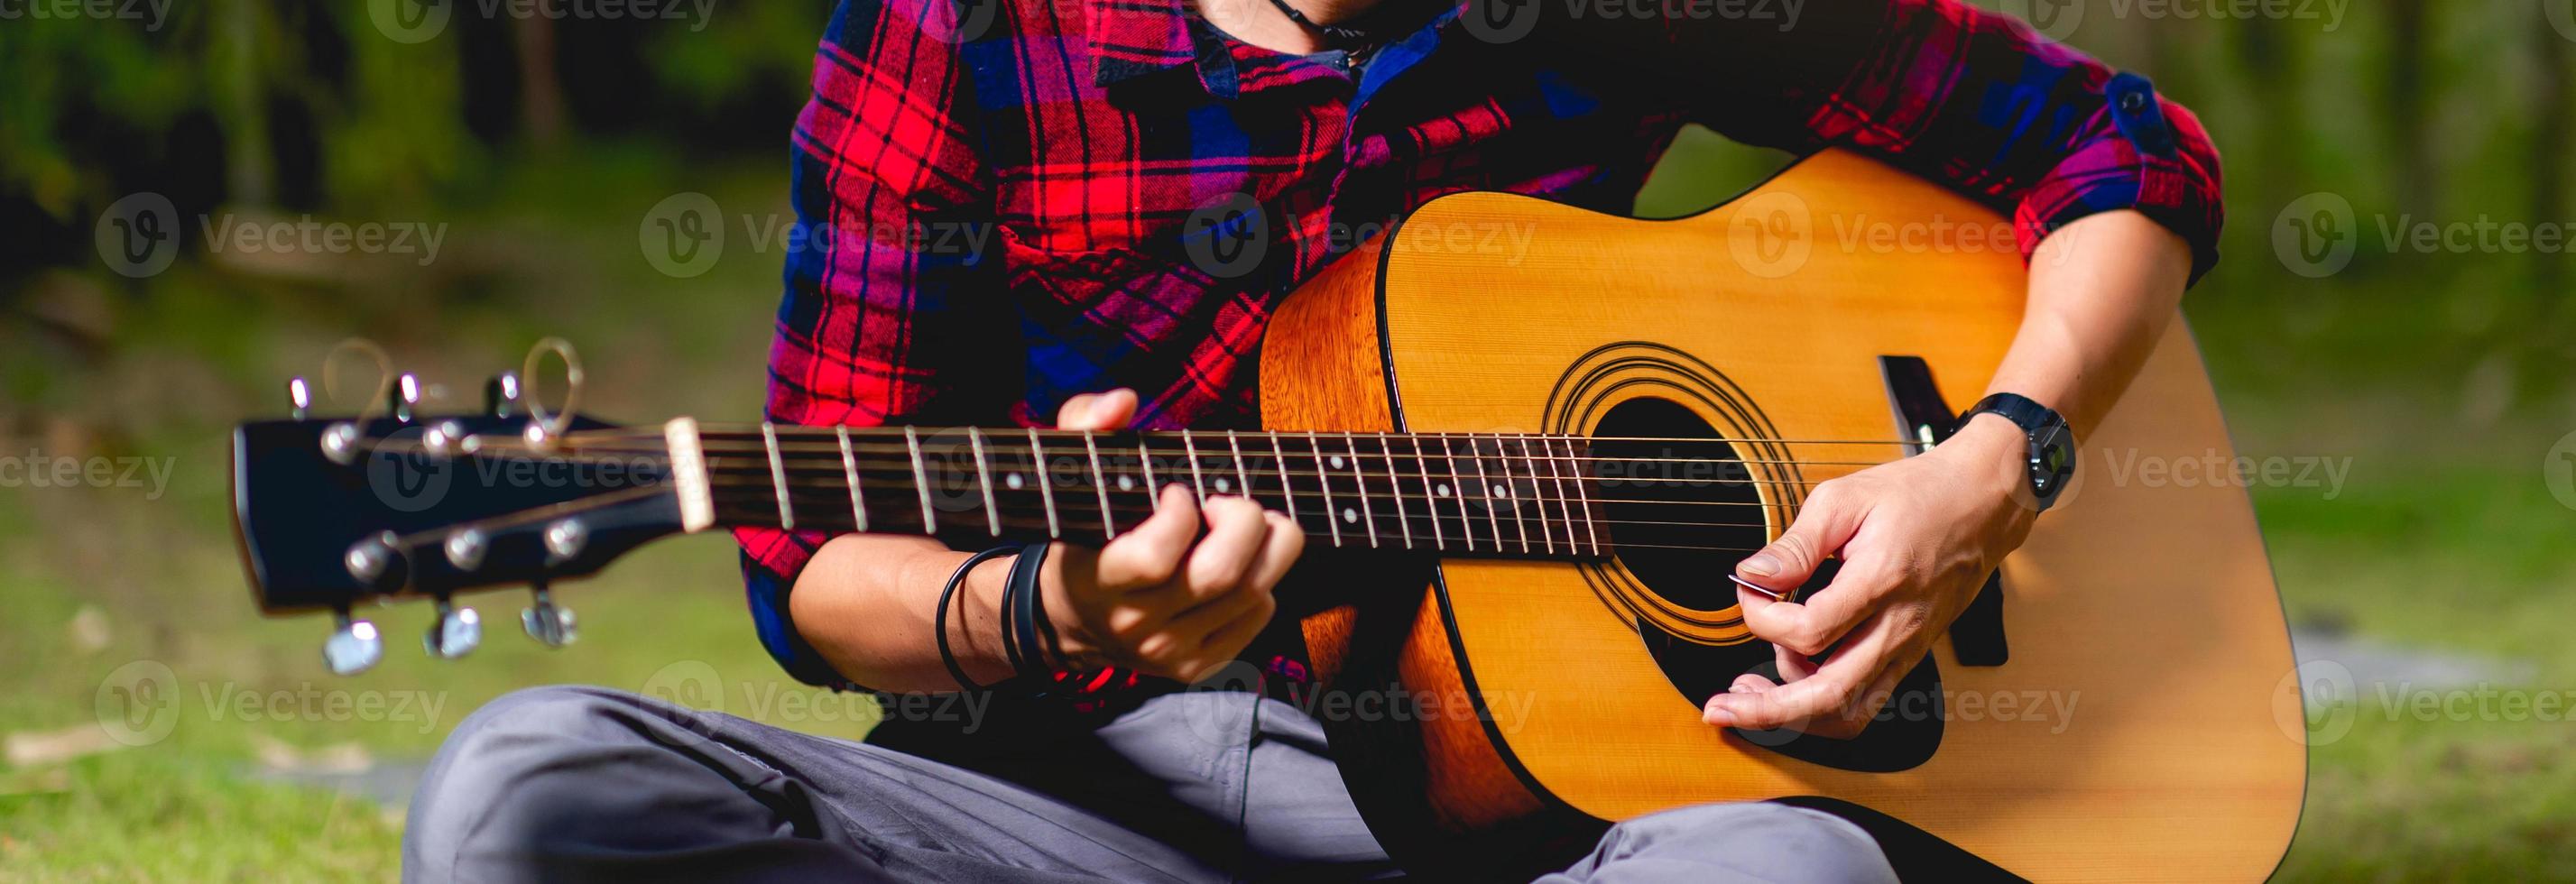 person som spelar gitarr utanför foto